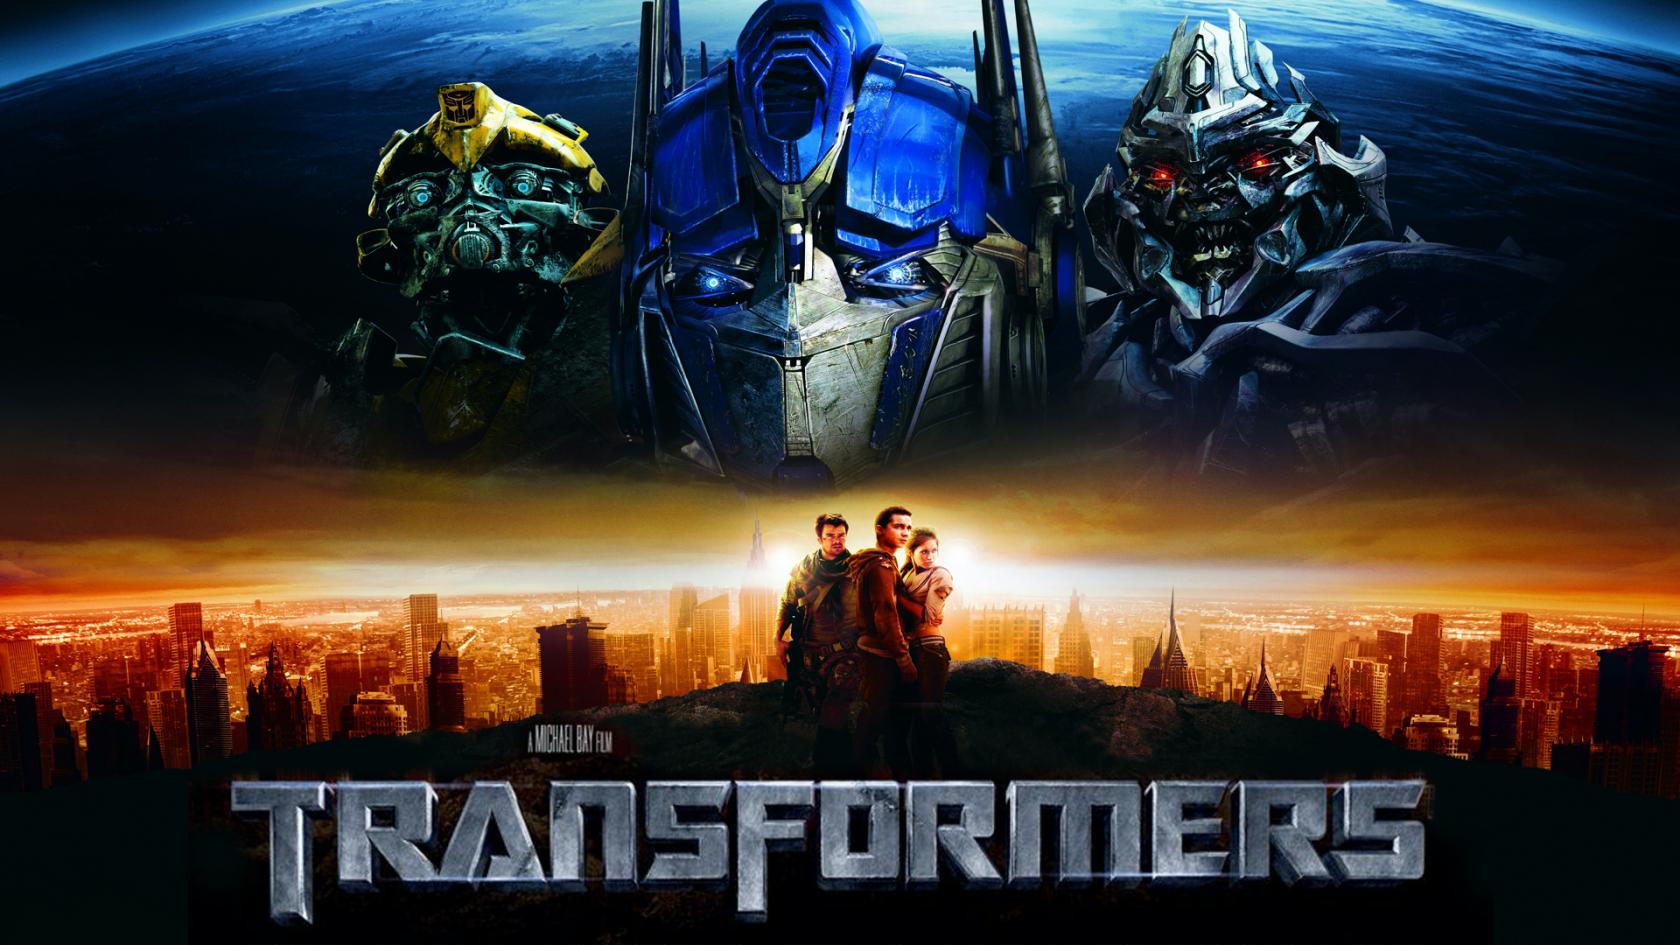 Ost transformers. Парк трансформеров. Transformers Revenge of the Fallen обложка. Трансформеры 2007 саундтрек. Transformers Soundtrack обложка.